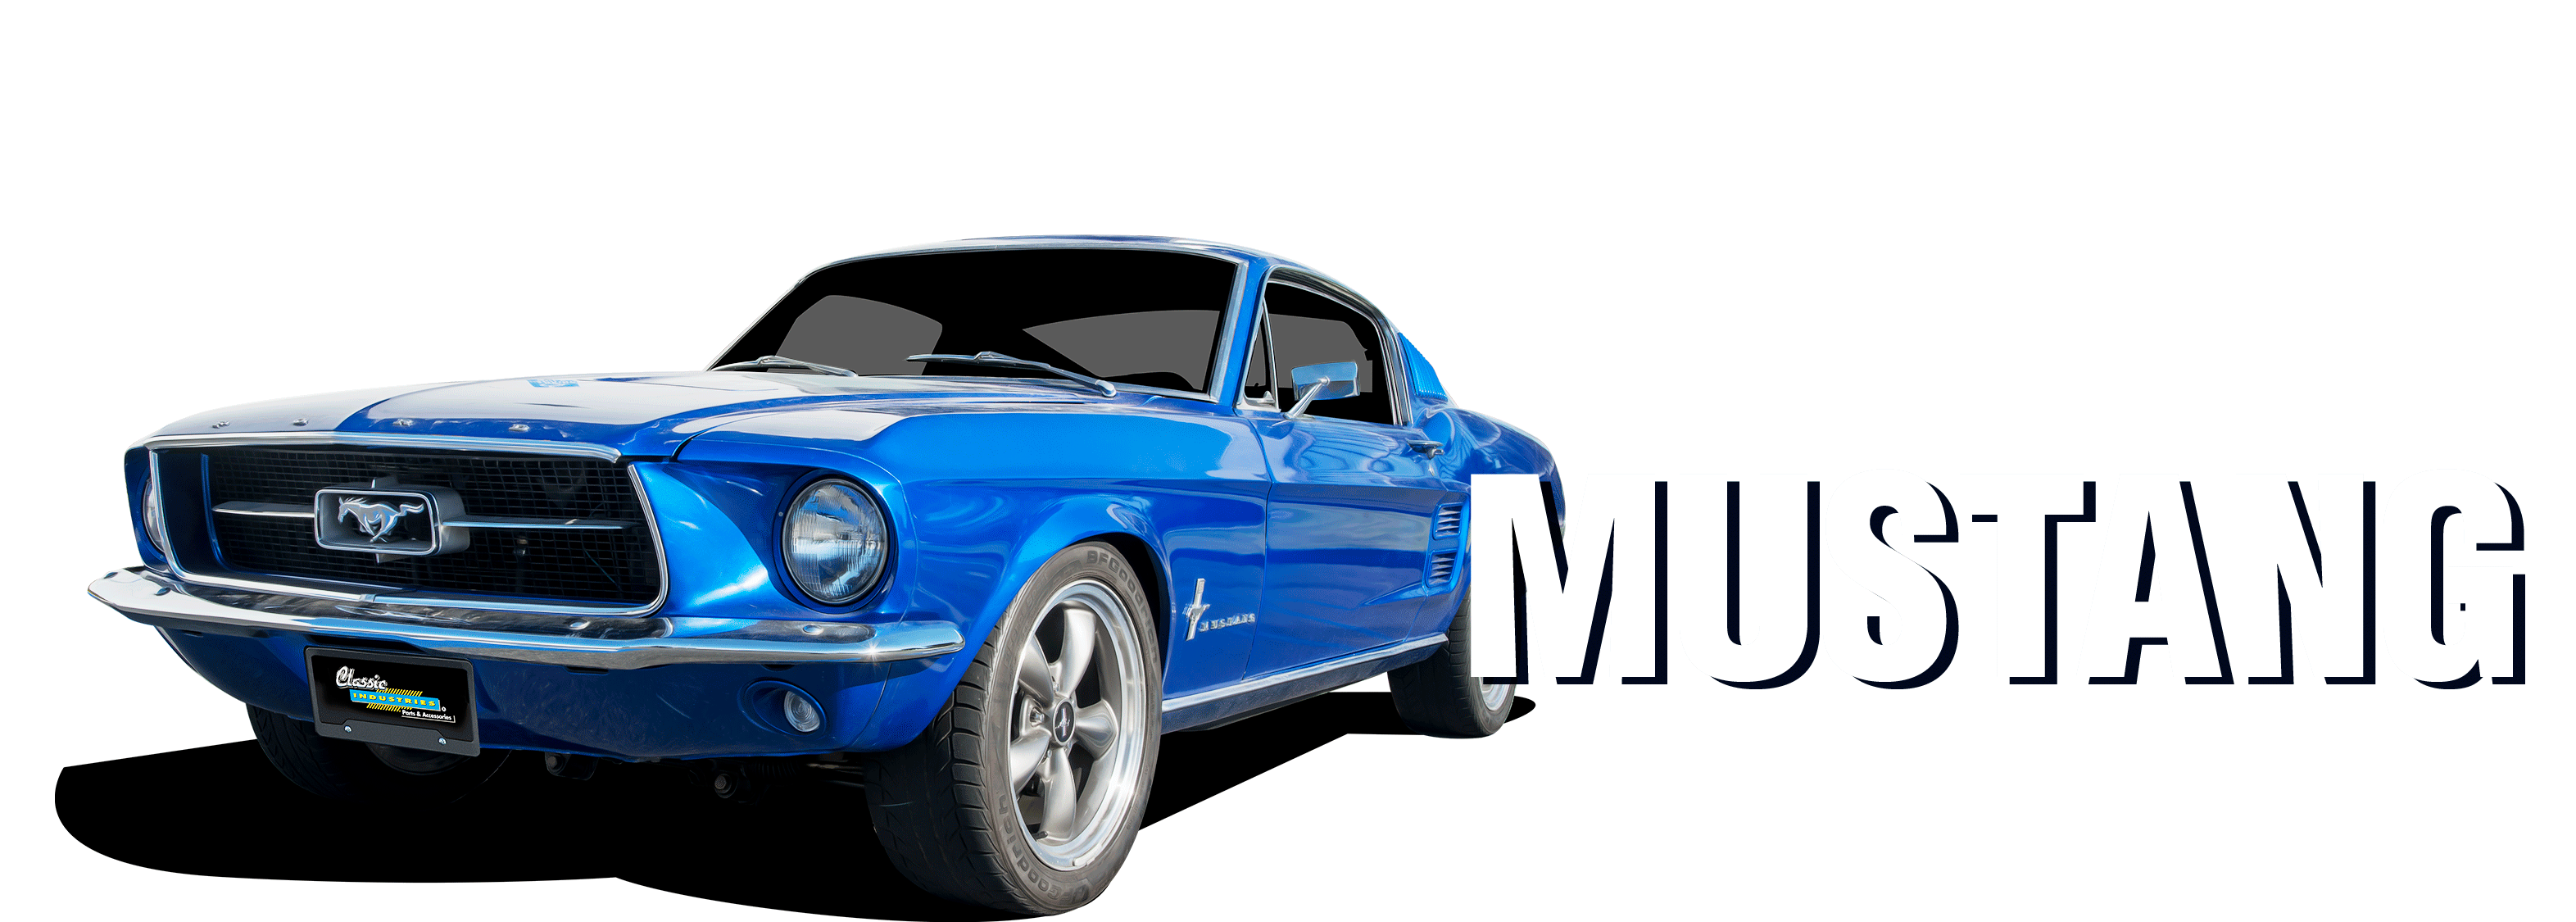 Ford-Mustang-vehicle-desktop_v6